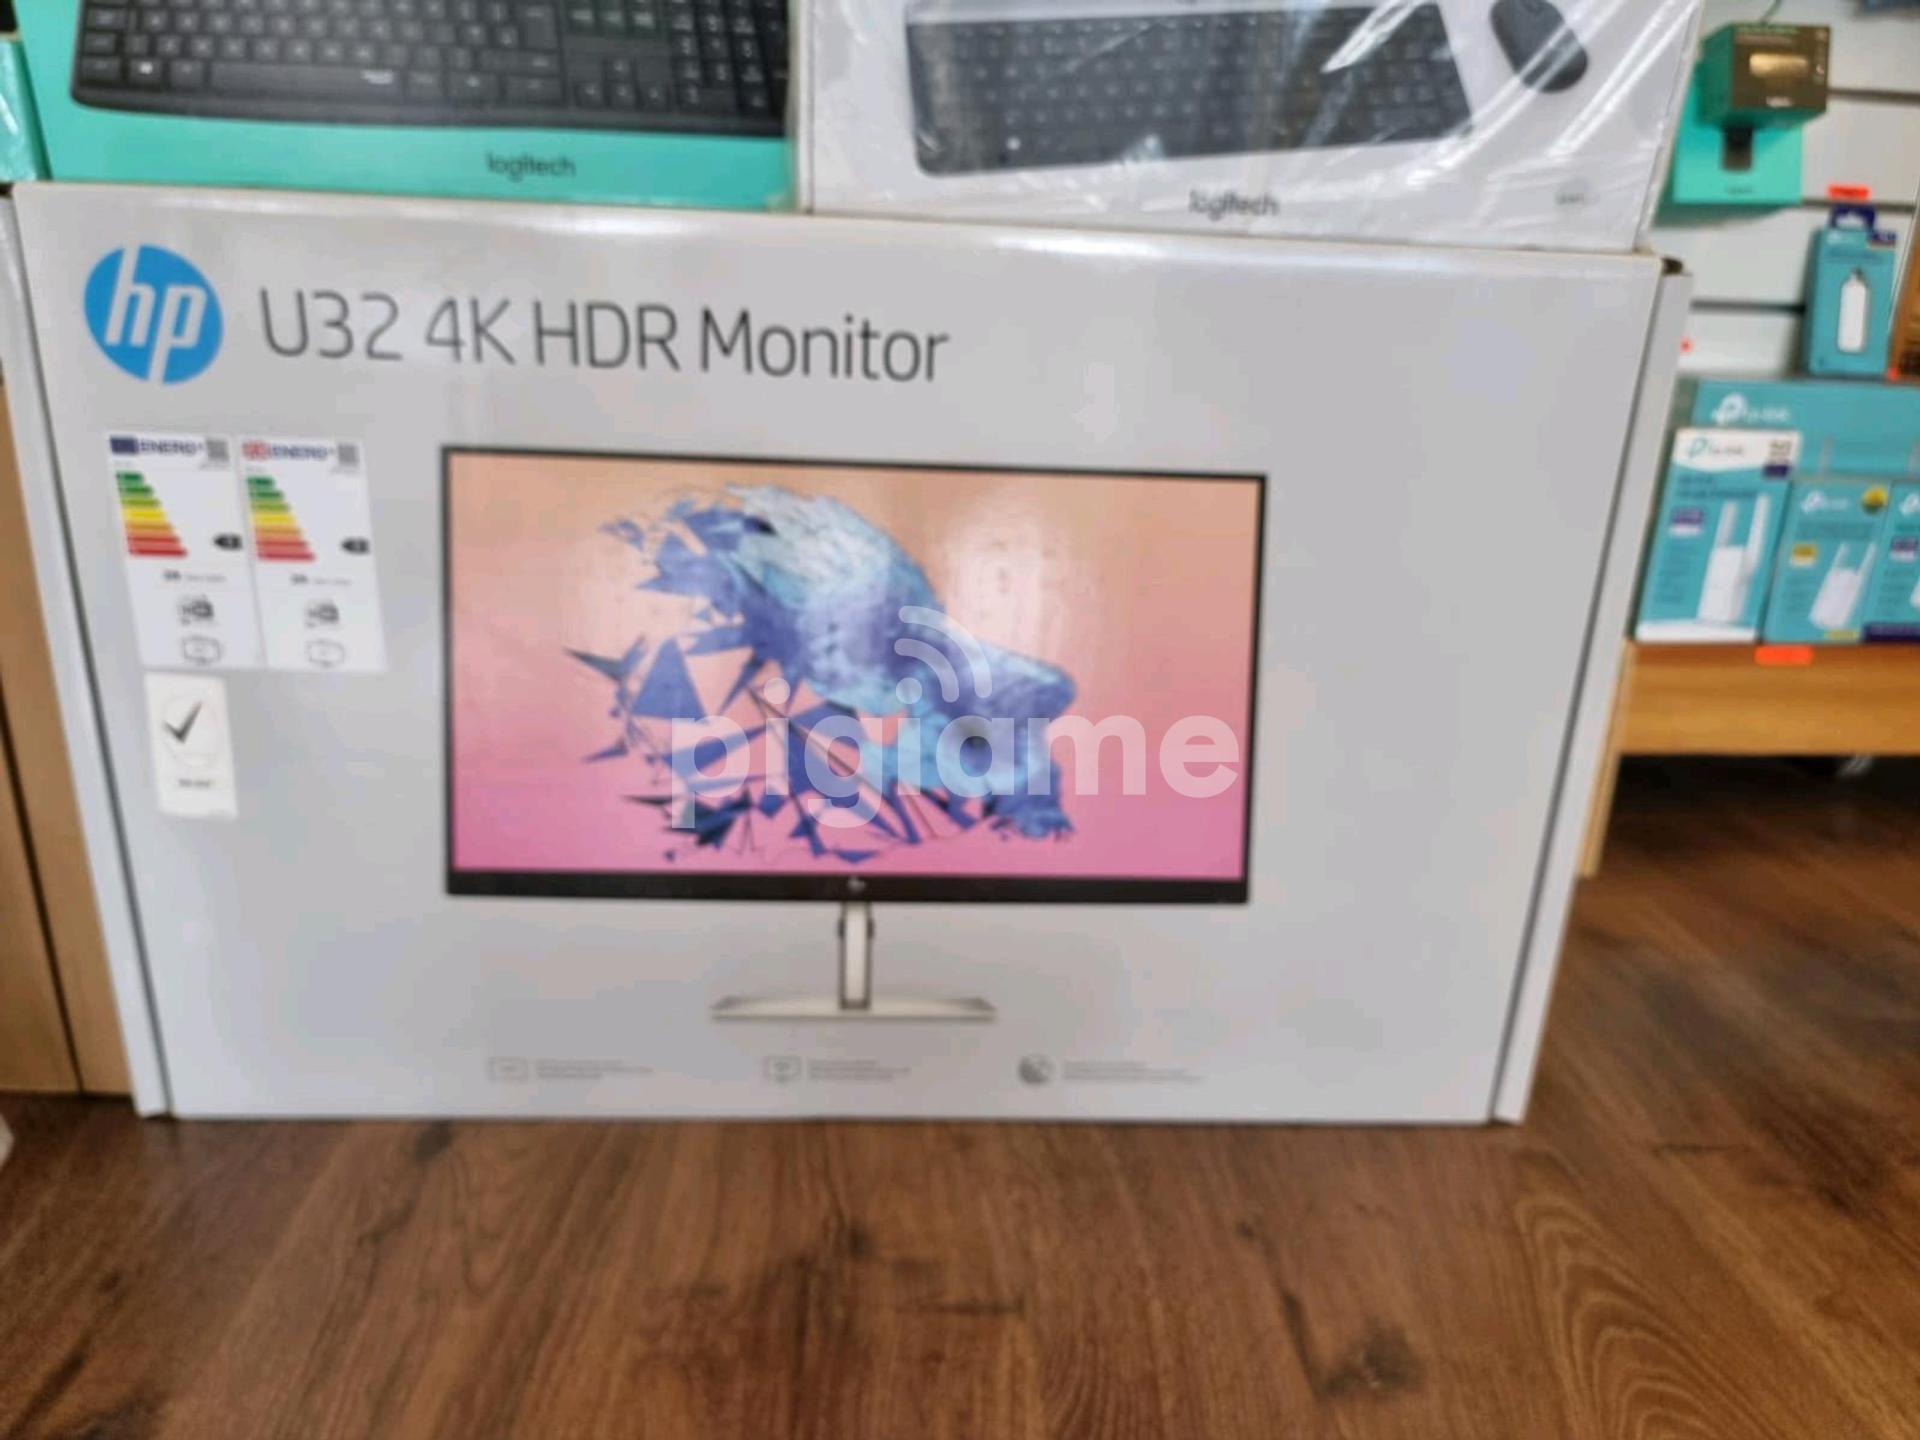 HP U32 4K HDR Monitor